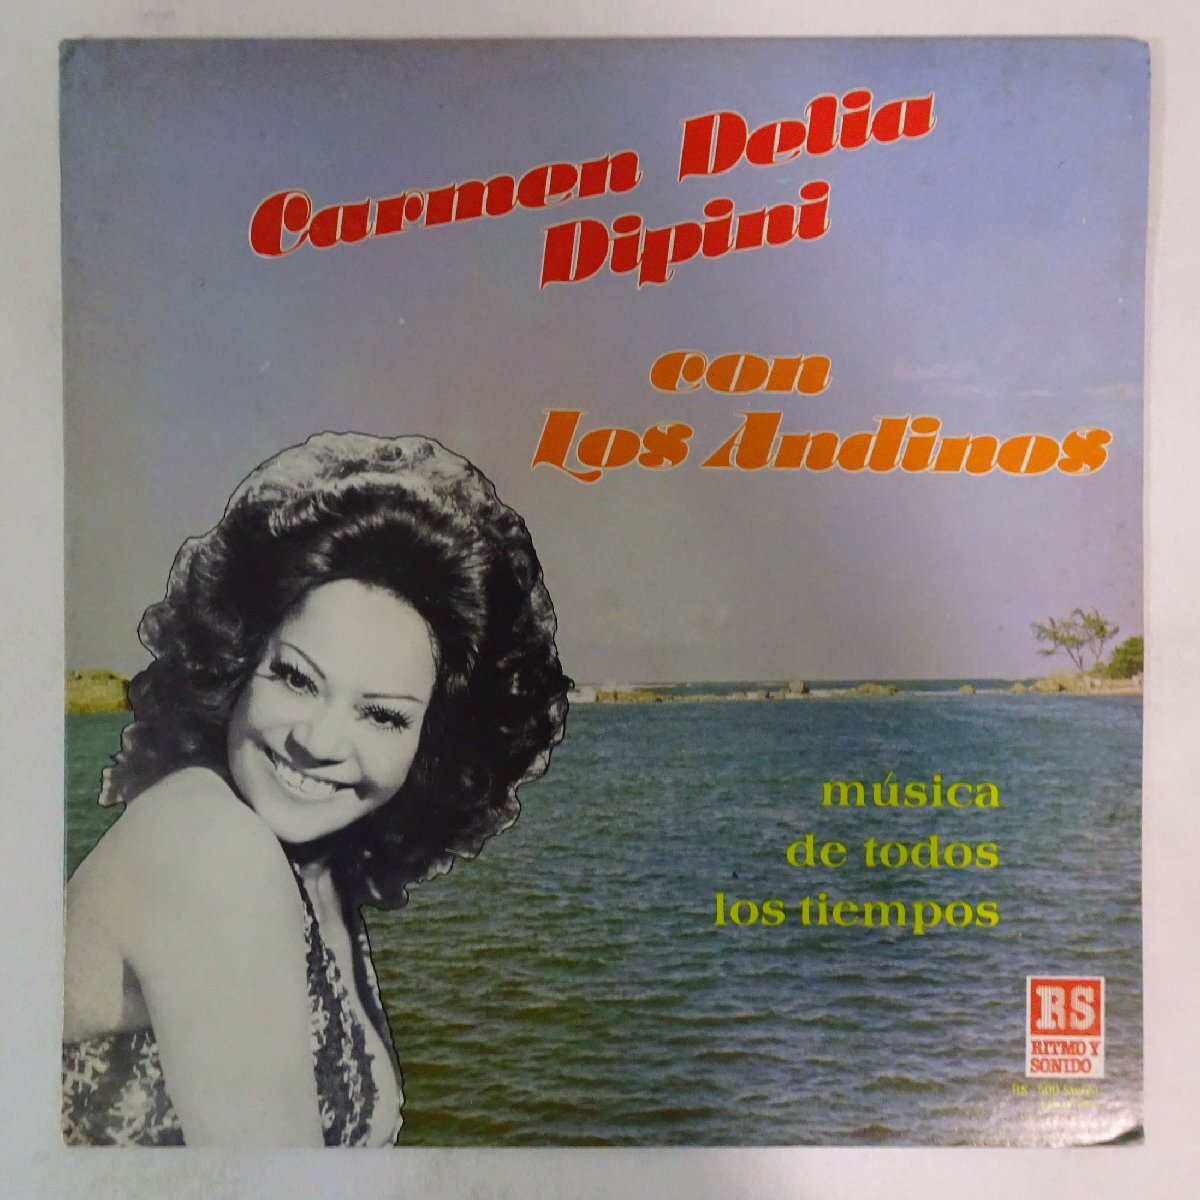 10025361;【Puerto Rico盤/LATIN】Carmen Delia Dipini con Los Andinos / Musica De Todos Los Tiemposの画像1